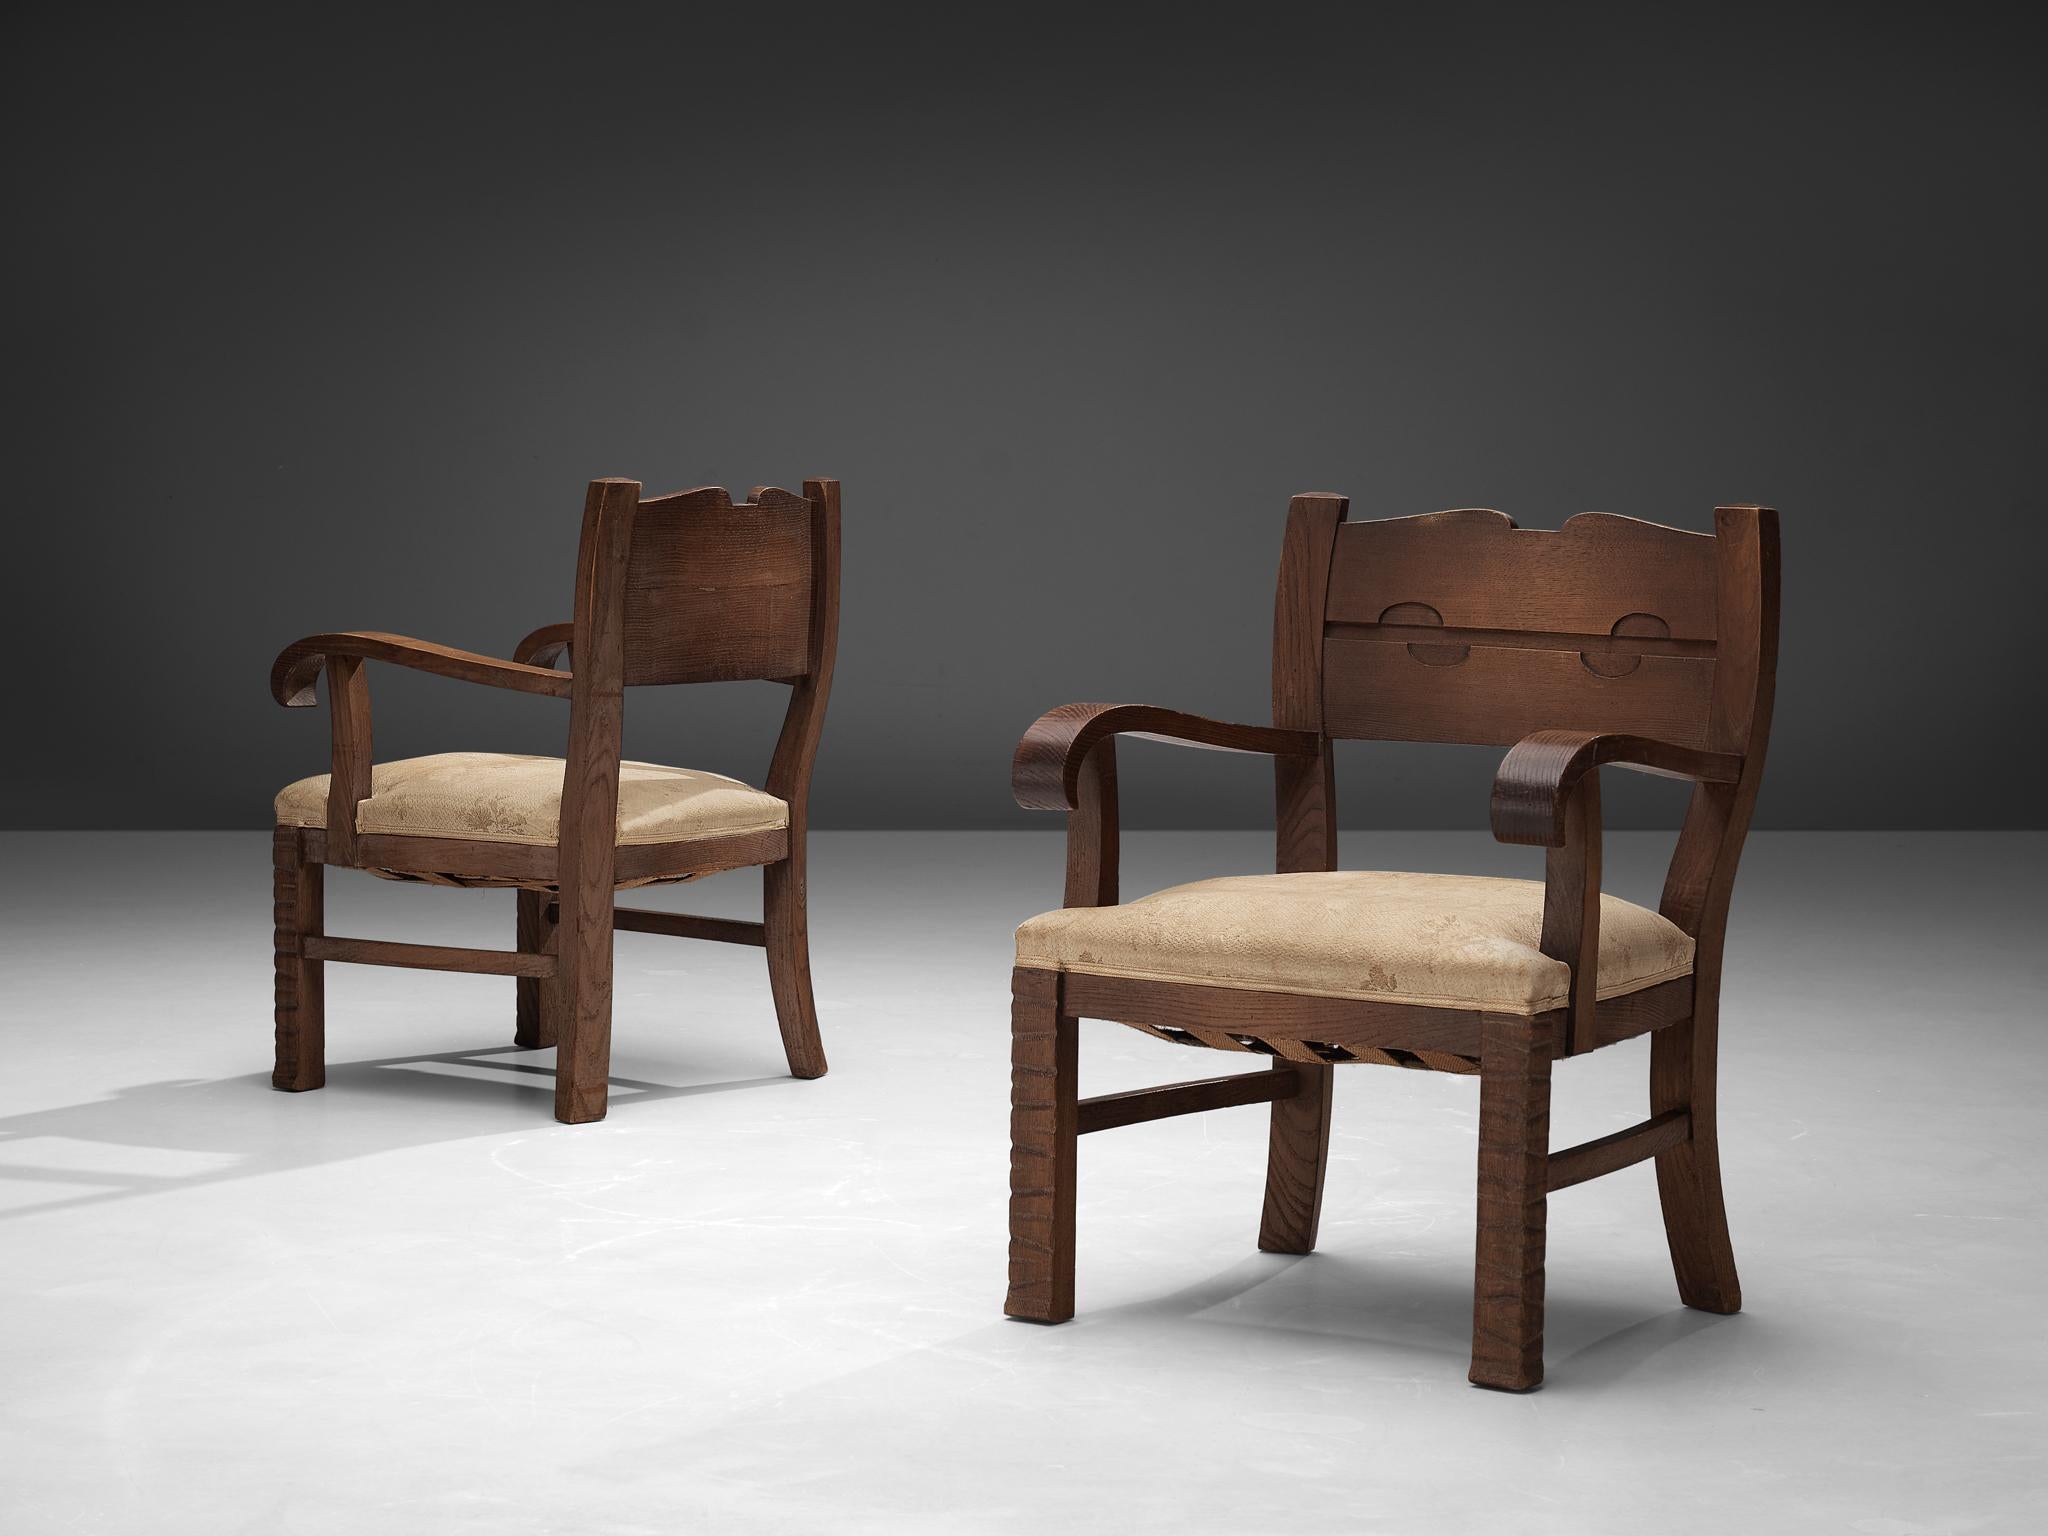 Ernesto Valabrega, paire de fauteuils, chêne, revêtement en tissu, Italie, vers 1935

Paire de fauteuils en chêne et tapisserie beige à motifs floraux du designer italien Ernesto Valabrega. Un large siège rembourré offre un grand confort. Les